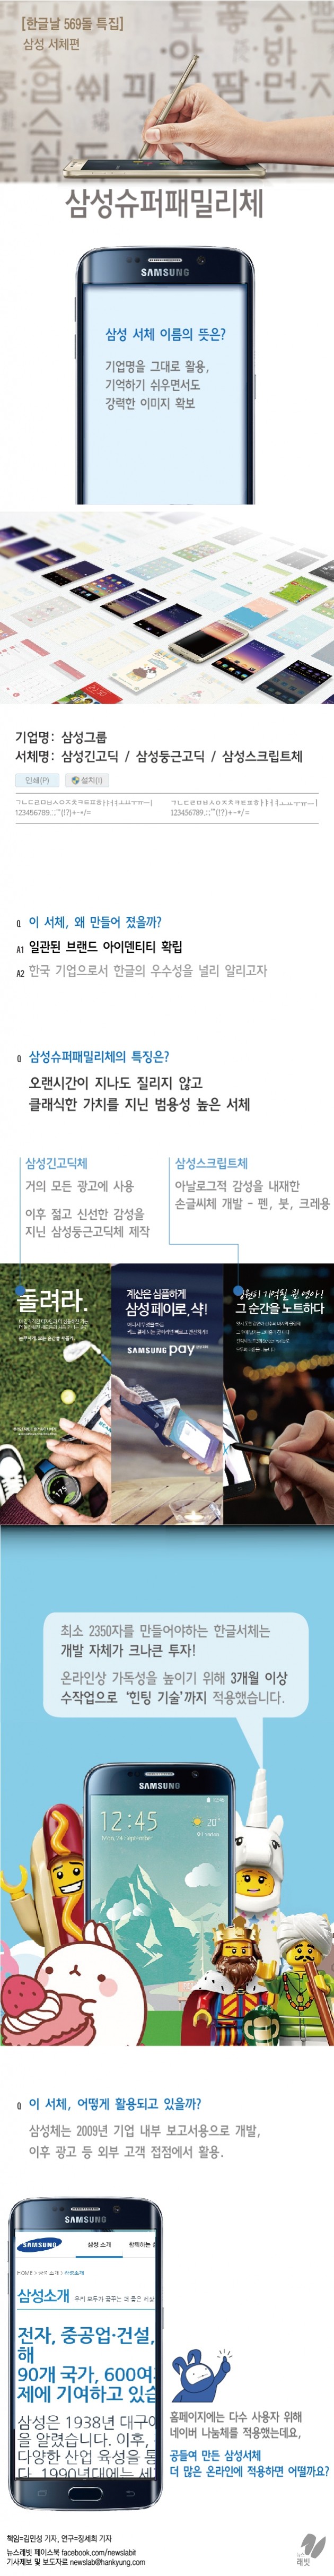 [뉴스래빗 한글날 3회] 한국 대표기업의 한글…삼성 슈퍼패밀리체